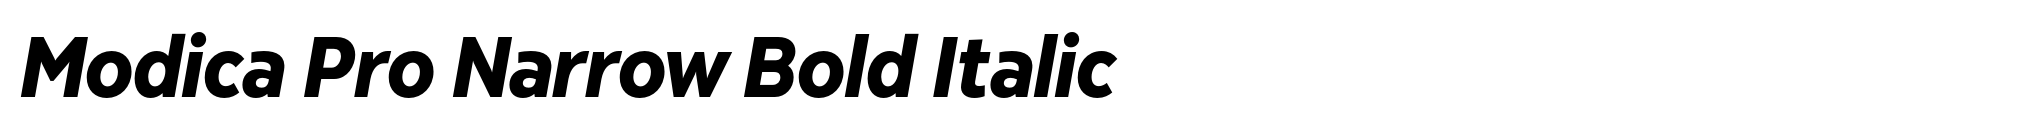 Modica Pro Narrow Bold Italic image